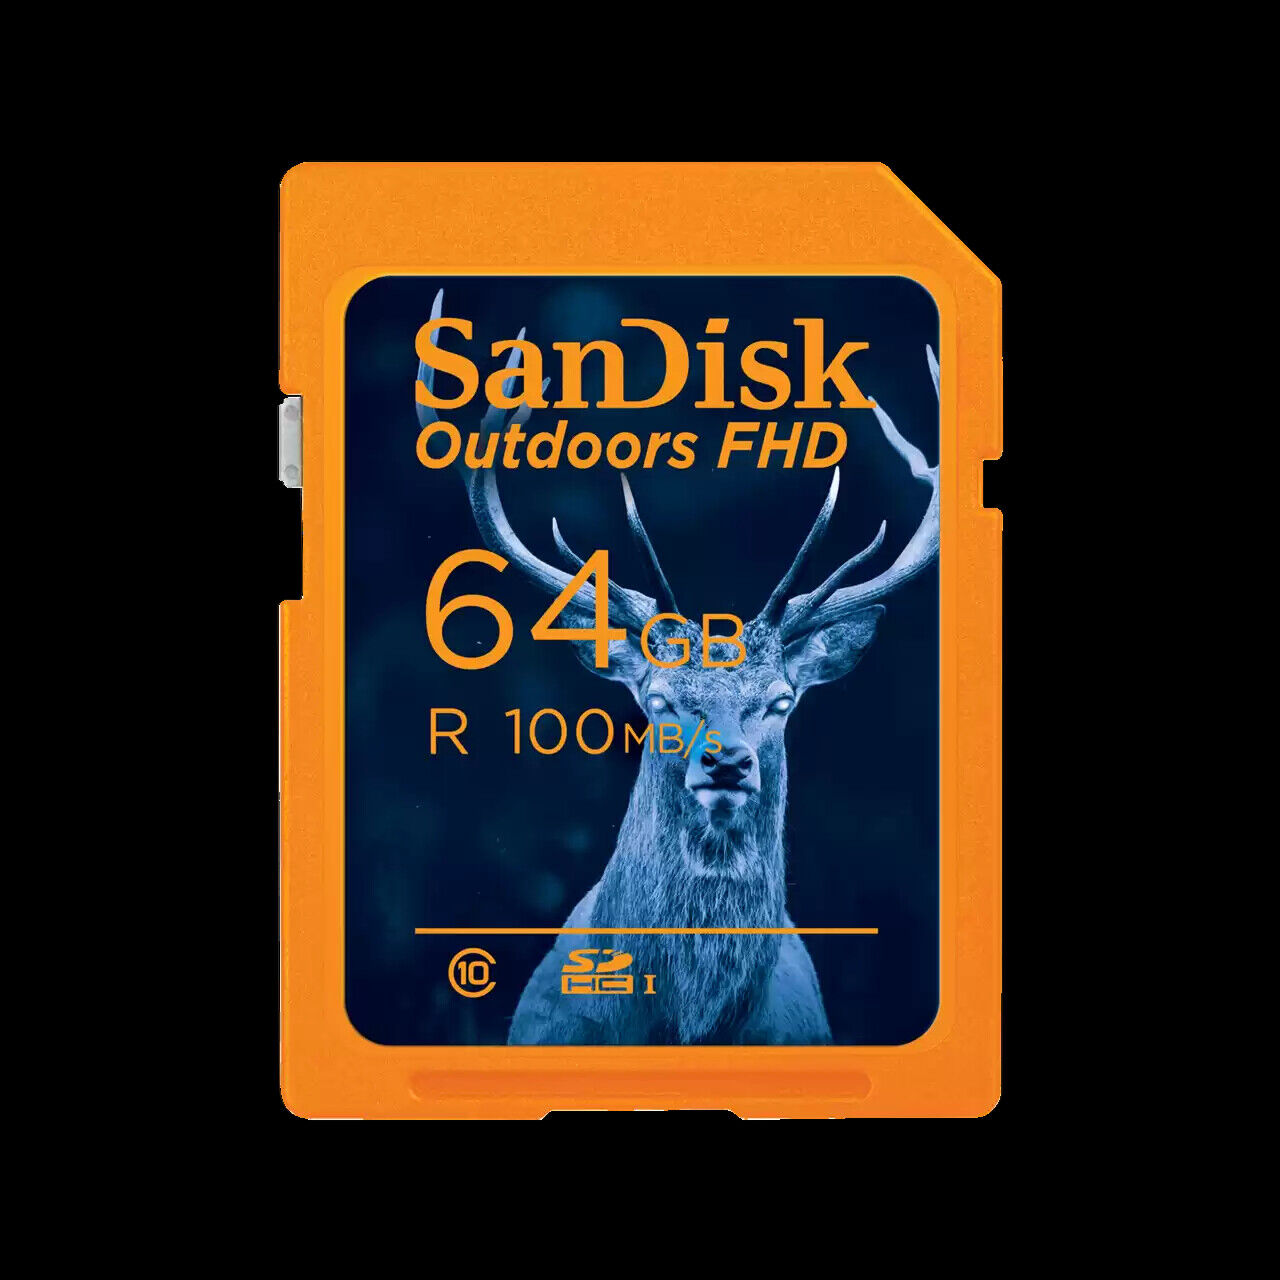 SanDisk 64GB Outdoors FHD microSDXC UHS-I Memory Card, 2-Pack SDSDUNR-064G-GN6V2